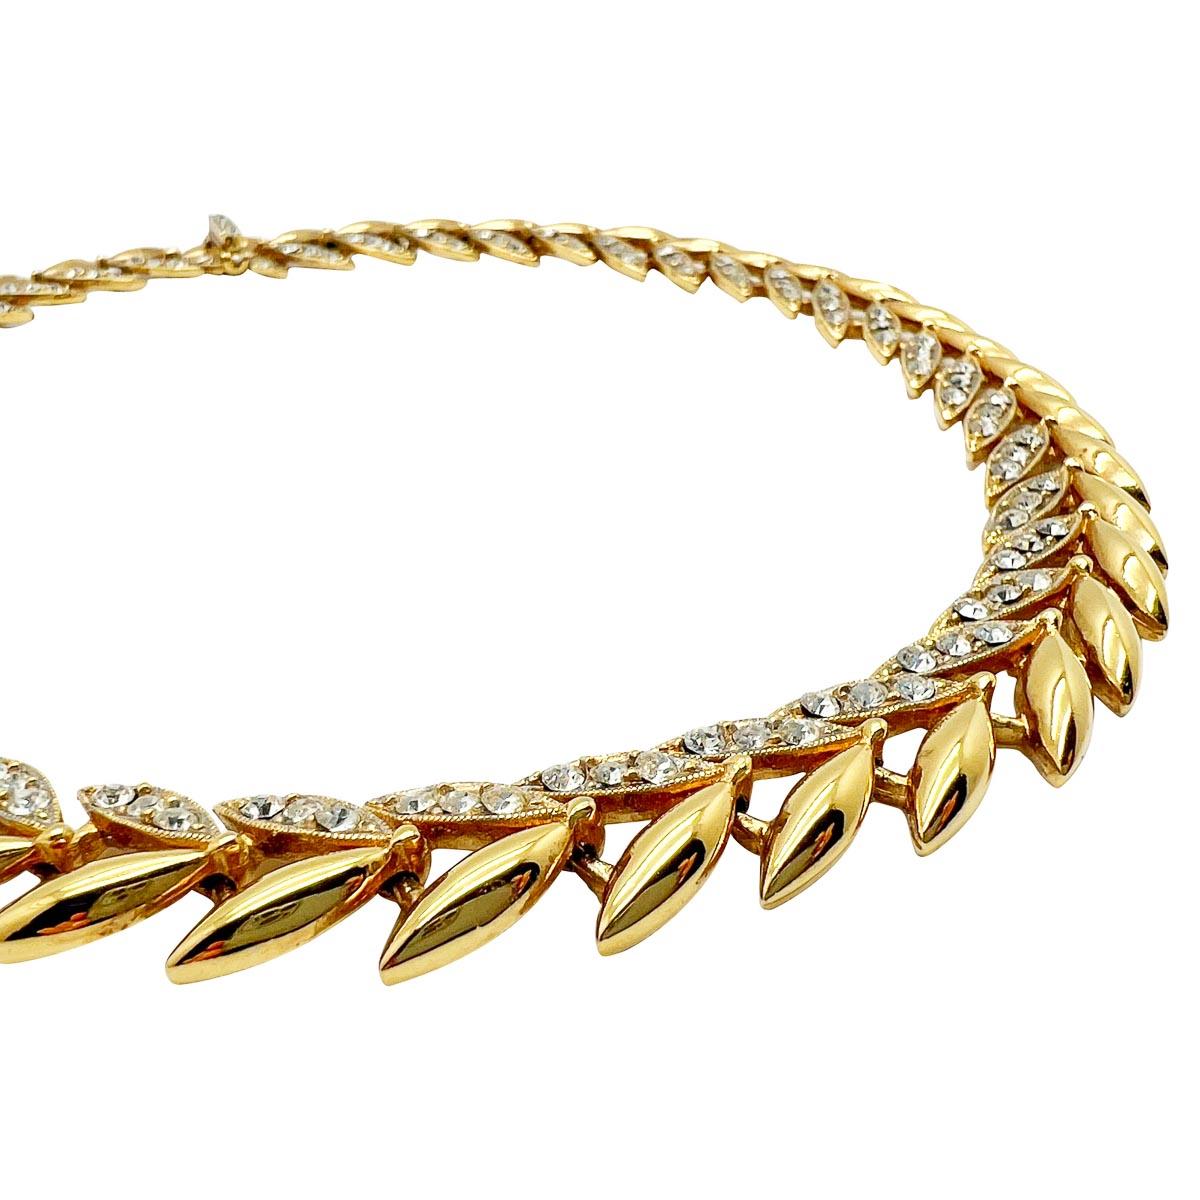 Ein Vintage-Kristall-Blatt-Halsband des Londoner Modeschmuckherstellers SARDI. Ein stilisiertes, goldenes Design, das mit Kristallen verziert ist, bietet einen modernen Stil mit einem glitzernden Touch.
Ihr Schmuckkästchen ist nur einen Augenblick